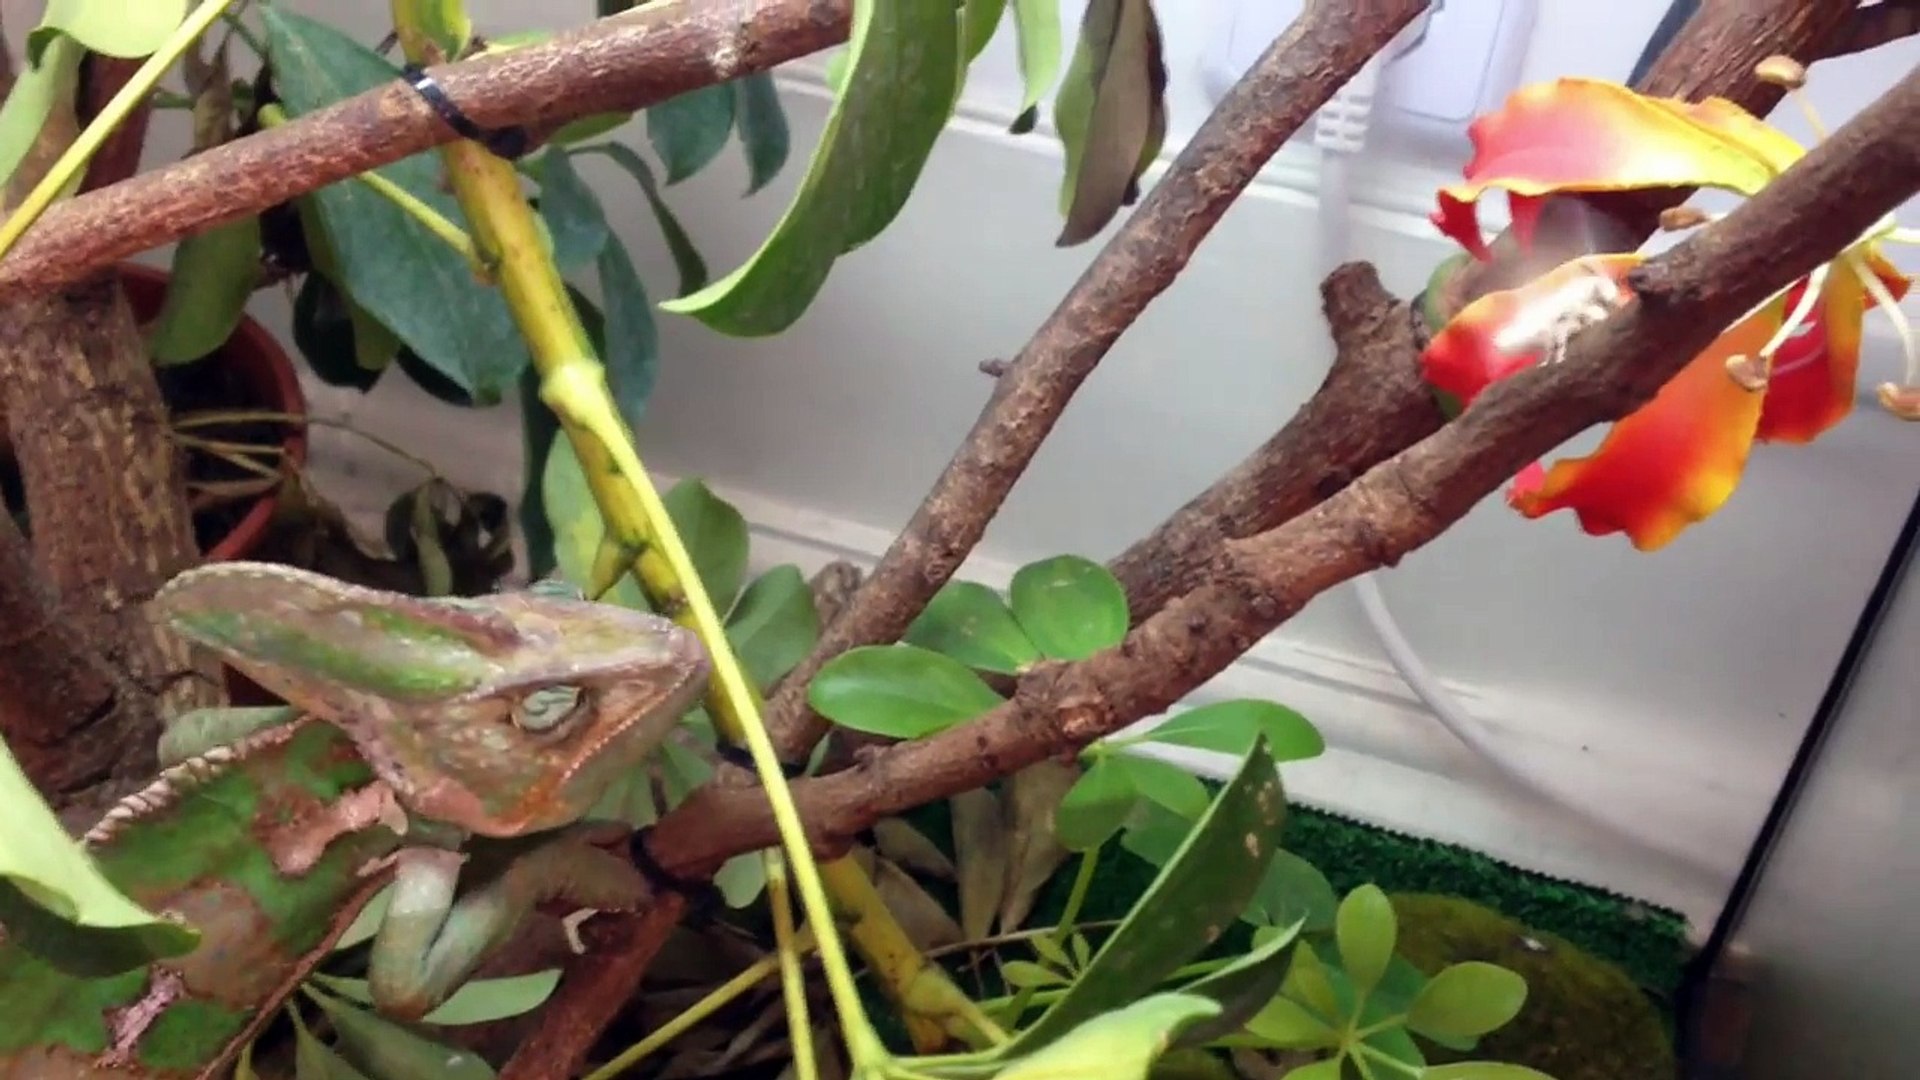 Chameleon eats Fruits and Vegetables